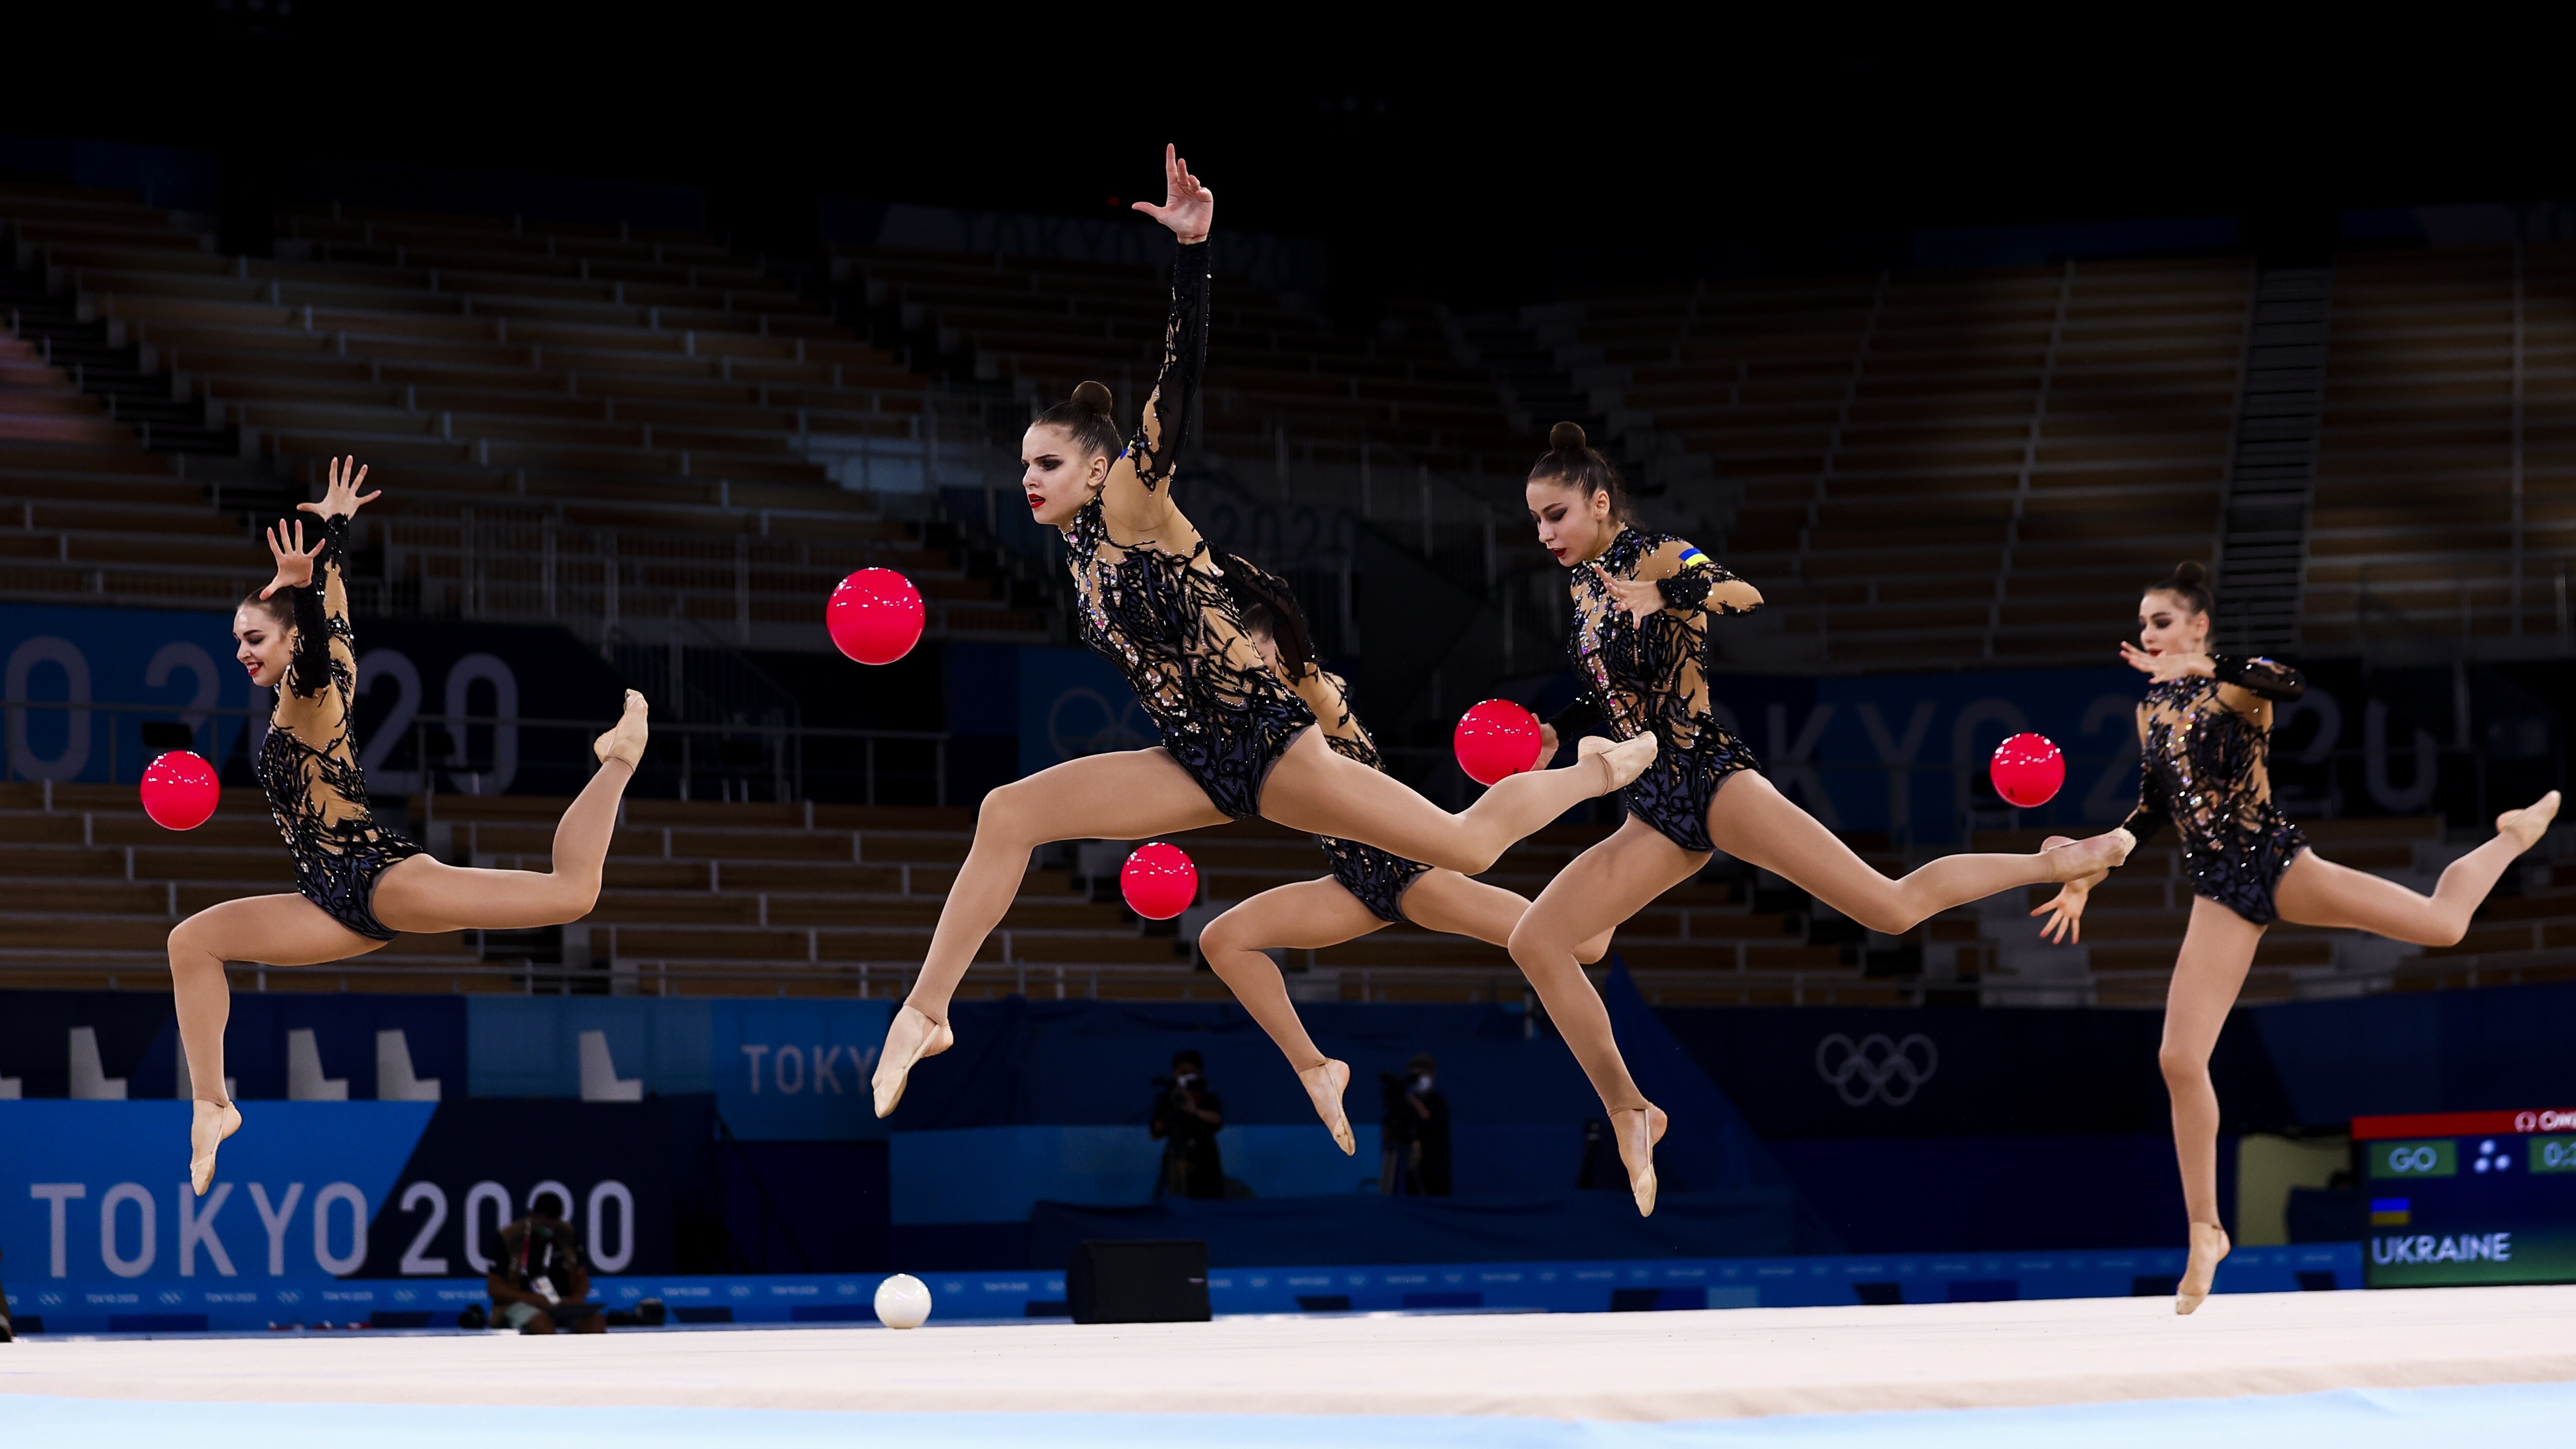 Олимпиада-2020 Украина вышла в командный финал в художественной гимнастике  - Олимпиада-2020 в Токио | Сегодня